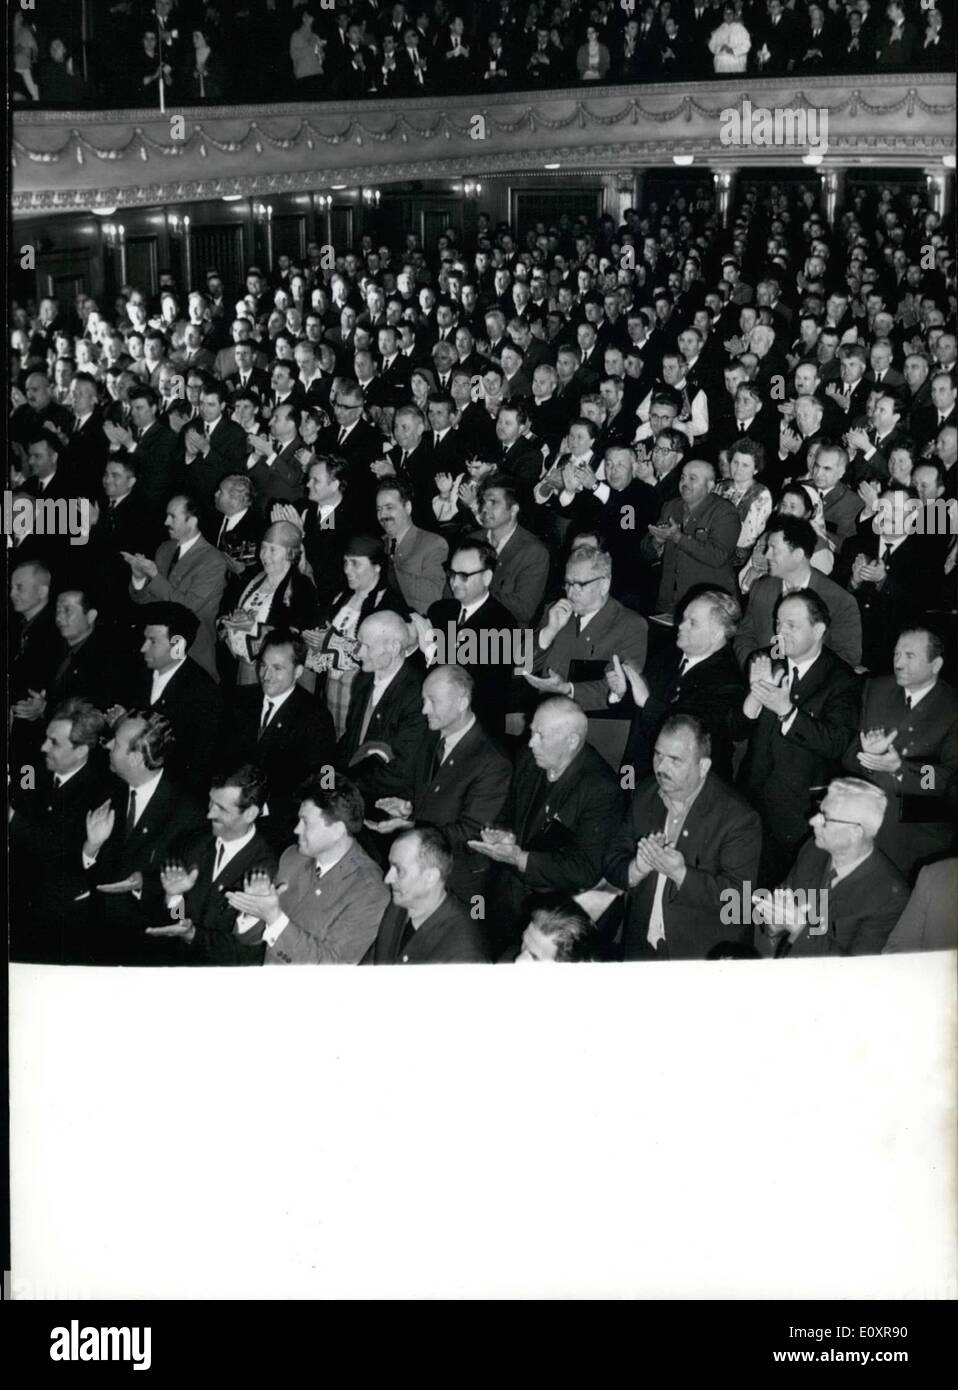 Agosto 08, 1967 - i delegati alla XXXI Congresso dell'agraria bulgara popolare di unione a Sophia, che è stata inaugurata il 1 aprile 24 , 1967. I delegati rappresentano 120.000 membri della Unione Bulgara e gli agricoltori provenienti da 27 paesi di forgiatura. Foto Stock